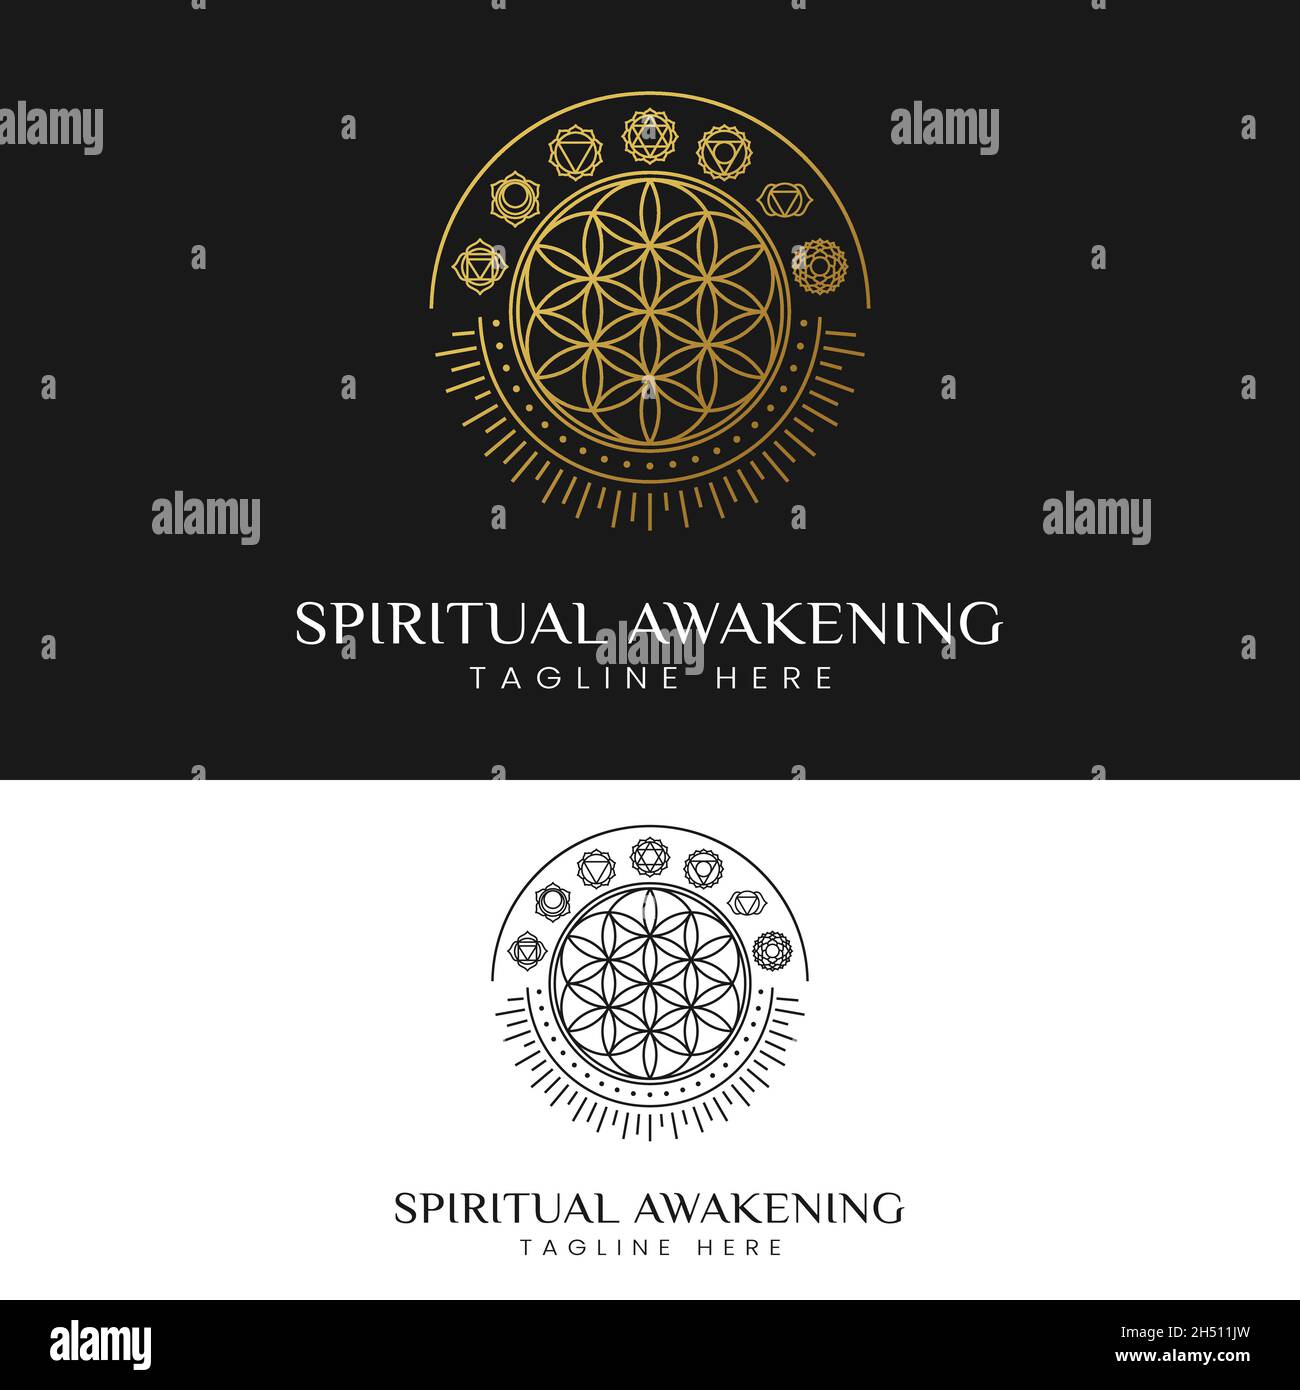 Risveglio spirituale con Flower of Life e 7 Chakra Symbols Logo Design Template. Adatto per studi di meditazione Yoga o medicina sanitaria, ecc. Illustrazione Vettoriale